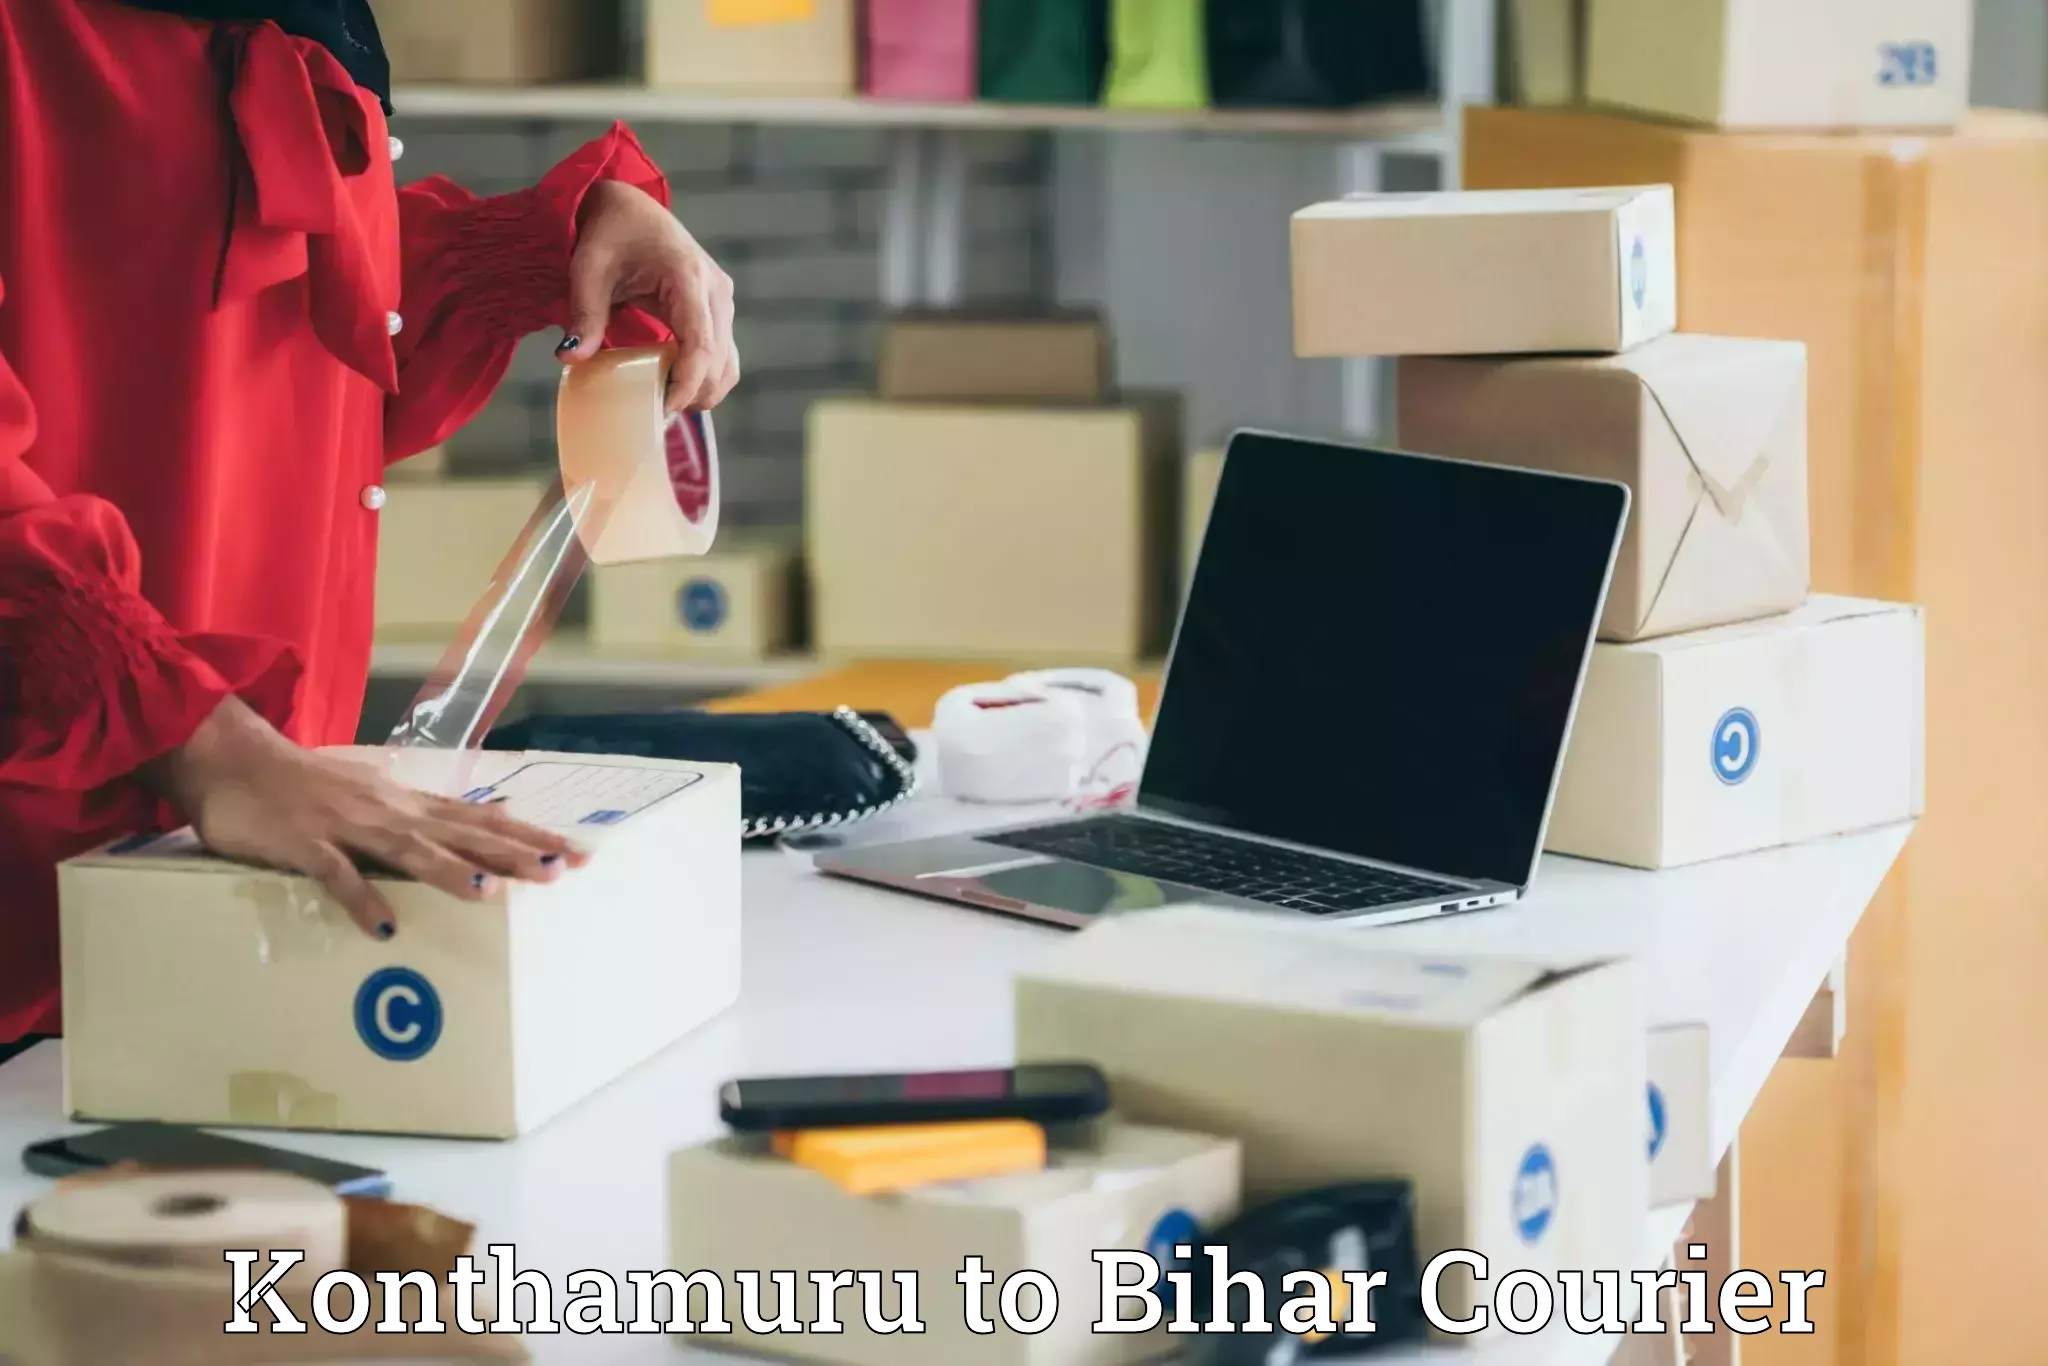 Premium courier services Konthamuru to Aurangabad Bihar